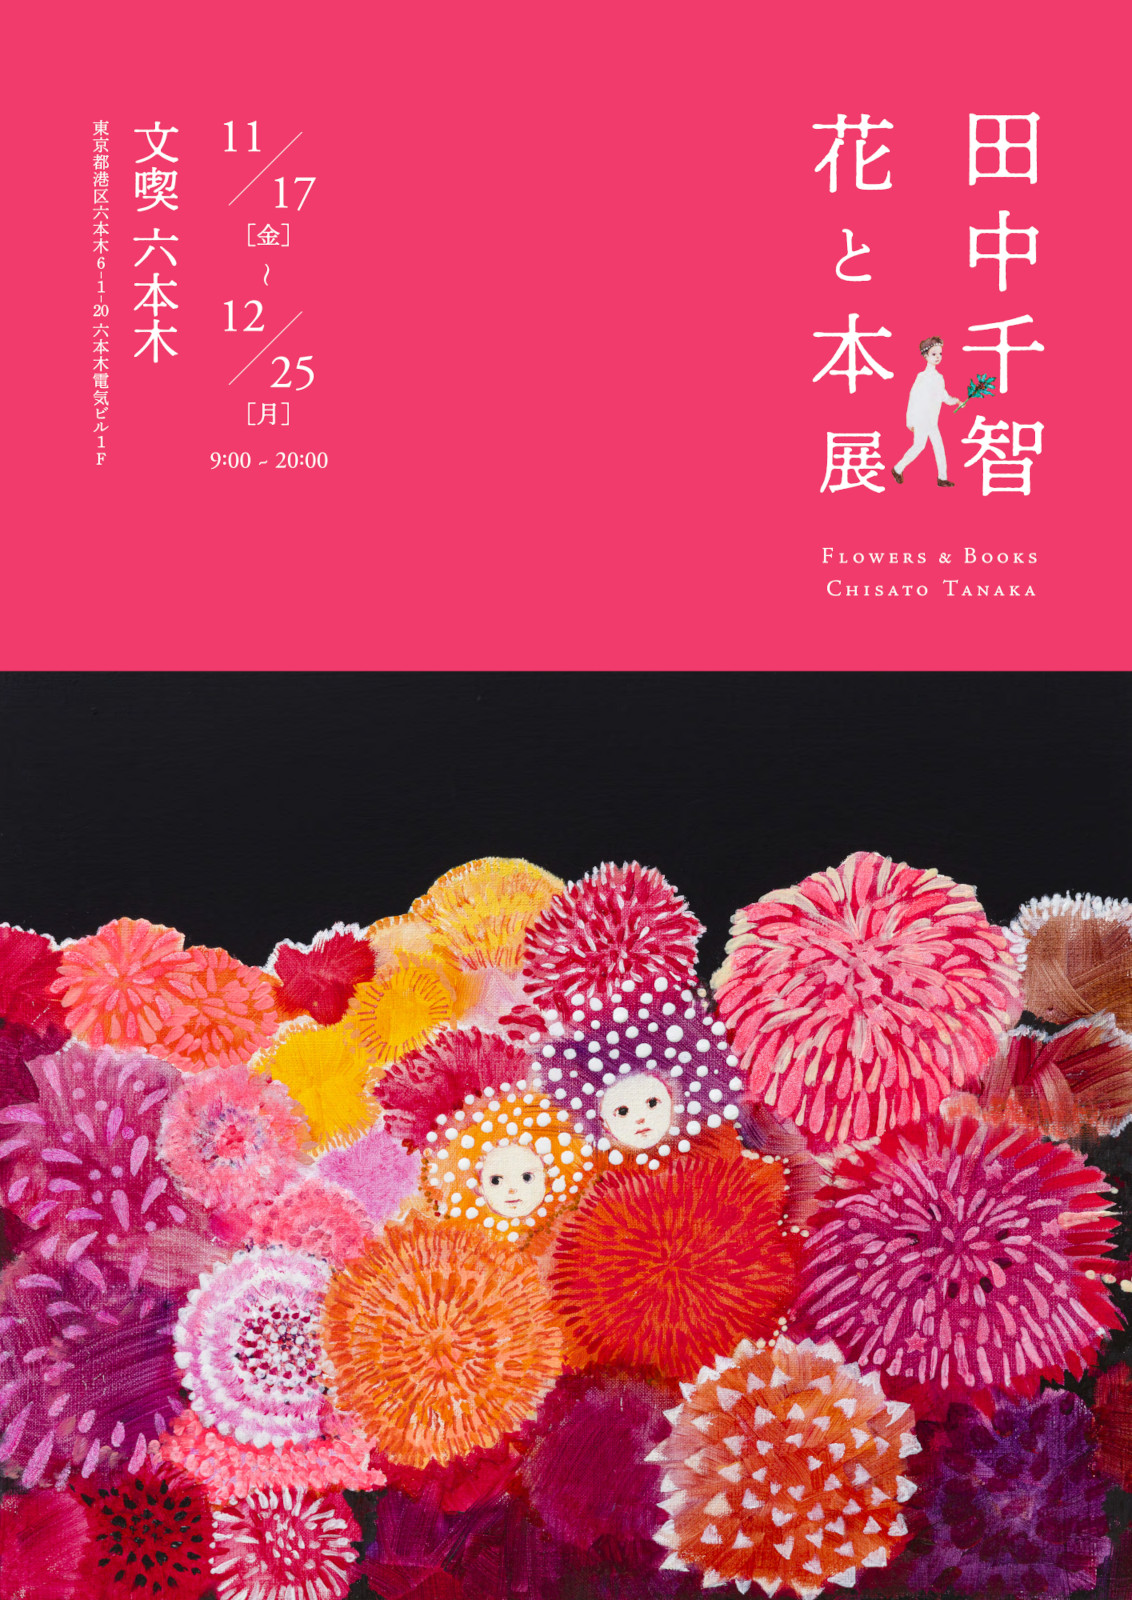 田中千智「花と本」展